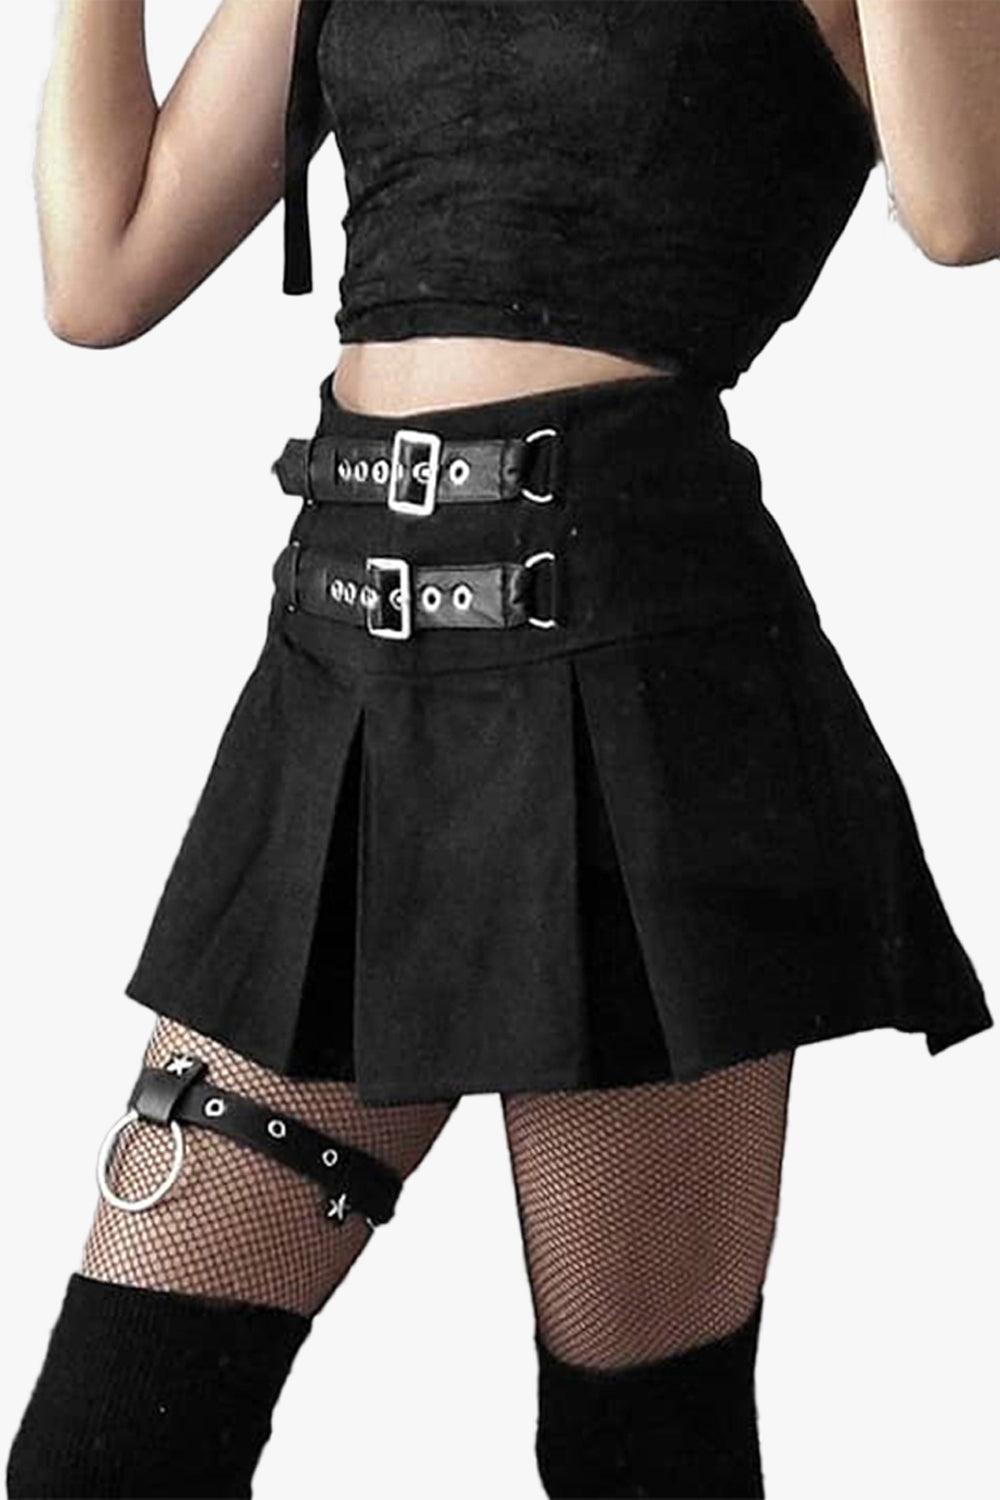 Double Belt Pleated Black Skirt